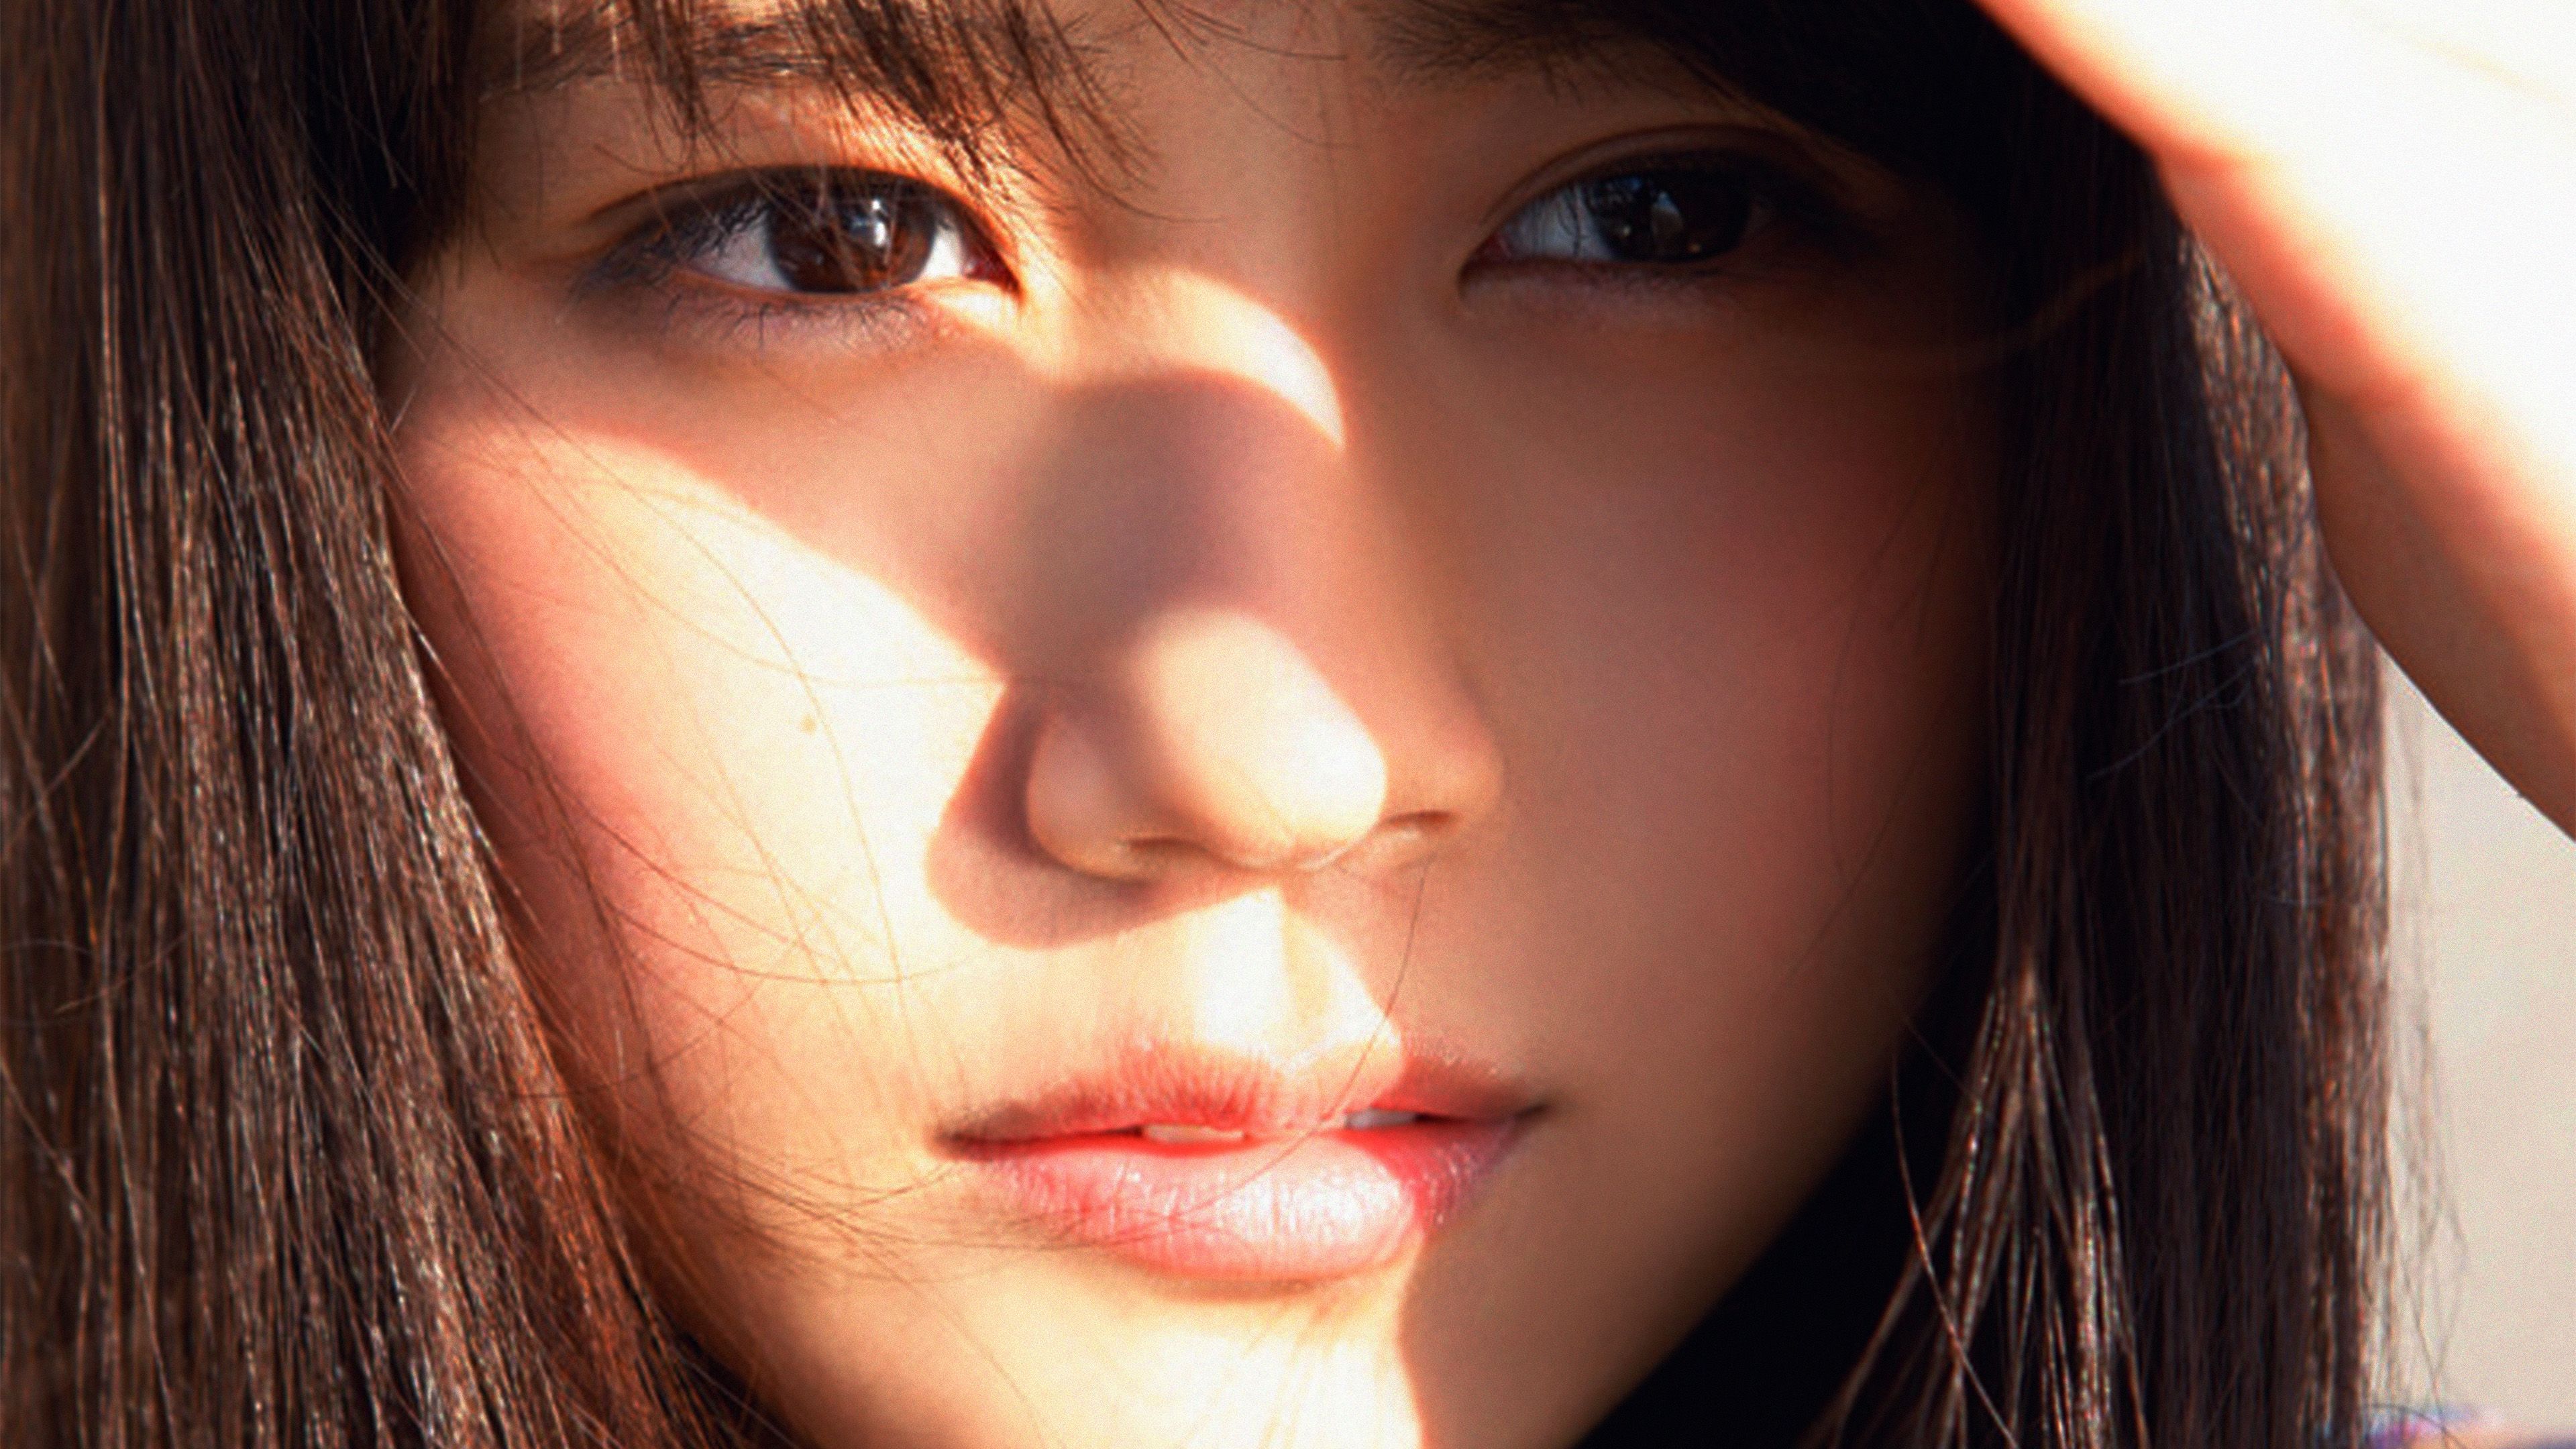 Arimura Kasumi Cute Japan Girl Face Summer Wallpaper